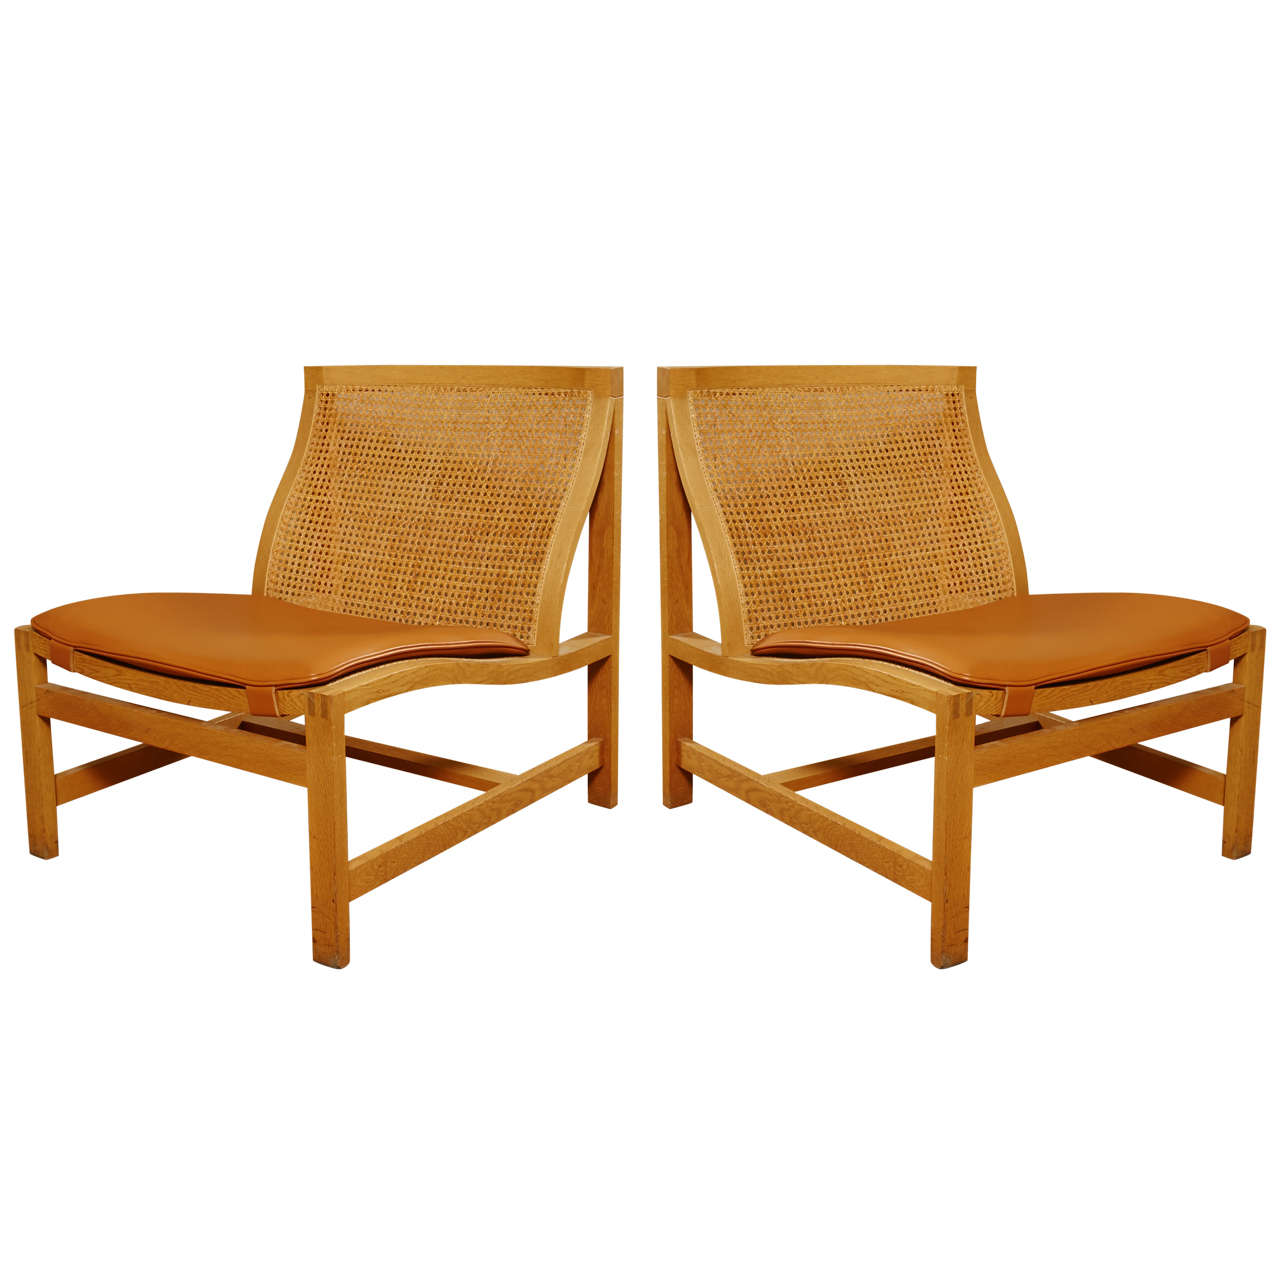 Pair of lounge chairs by Rud Thygesen & Johnny Sorensen for Botium ca.1970